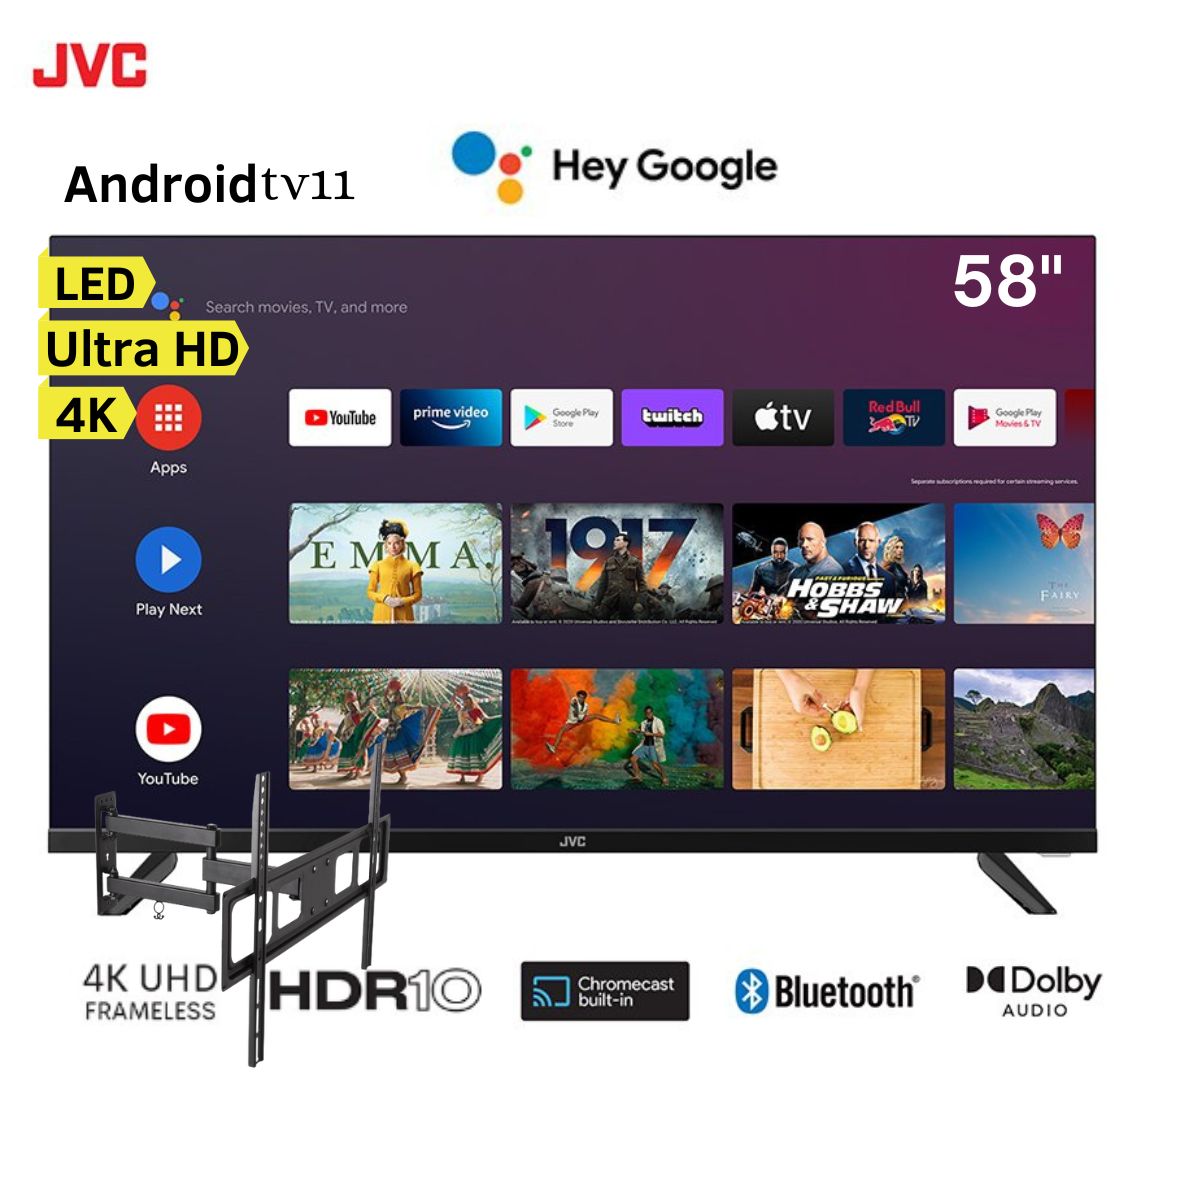 Televisor JVC 58" LED Smart TV Ultra HD 4K Frameless AndroidTv11 LT-58KB527 + Rack